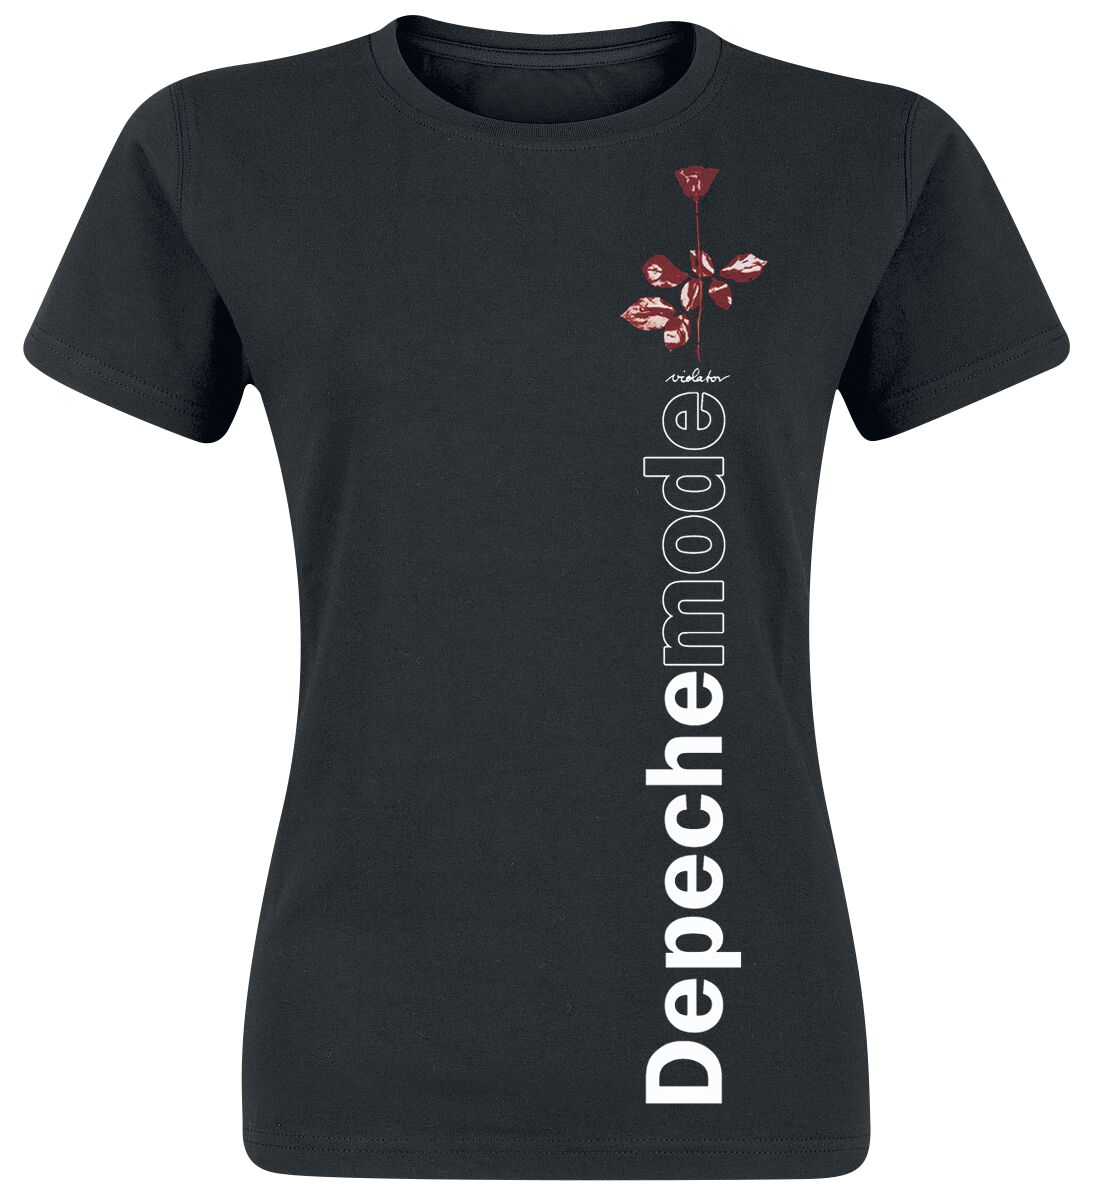 Depeche Mode T-Shirt - Violator Side Rose - S bis XXL - für Damen - Größe S - schwarz  - Lizenziertes Merchandise!